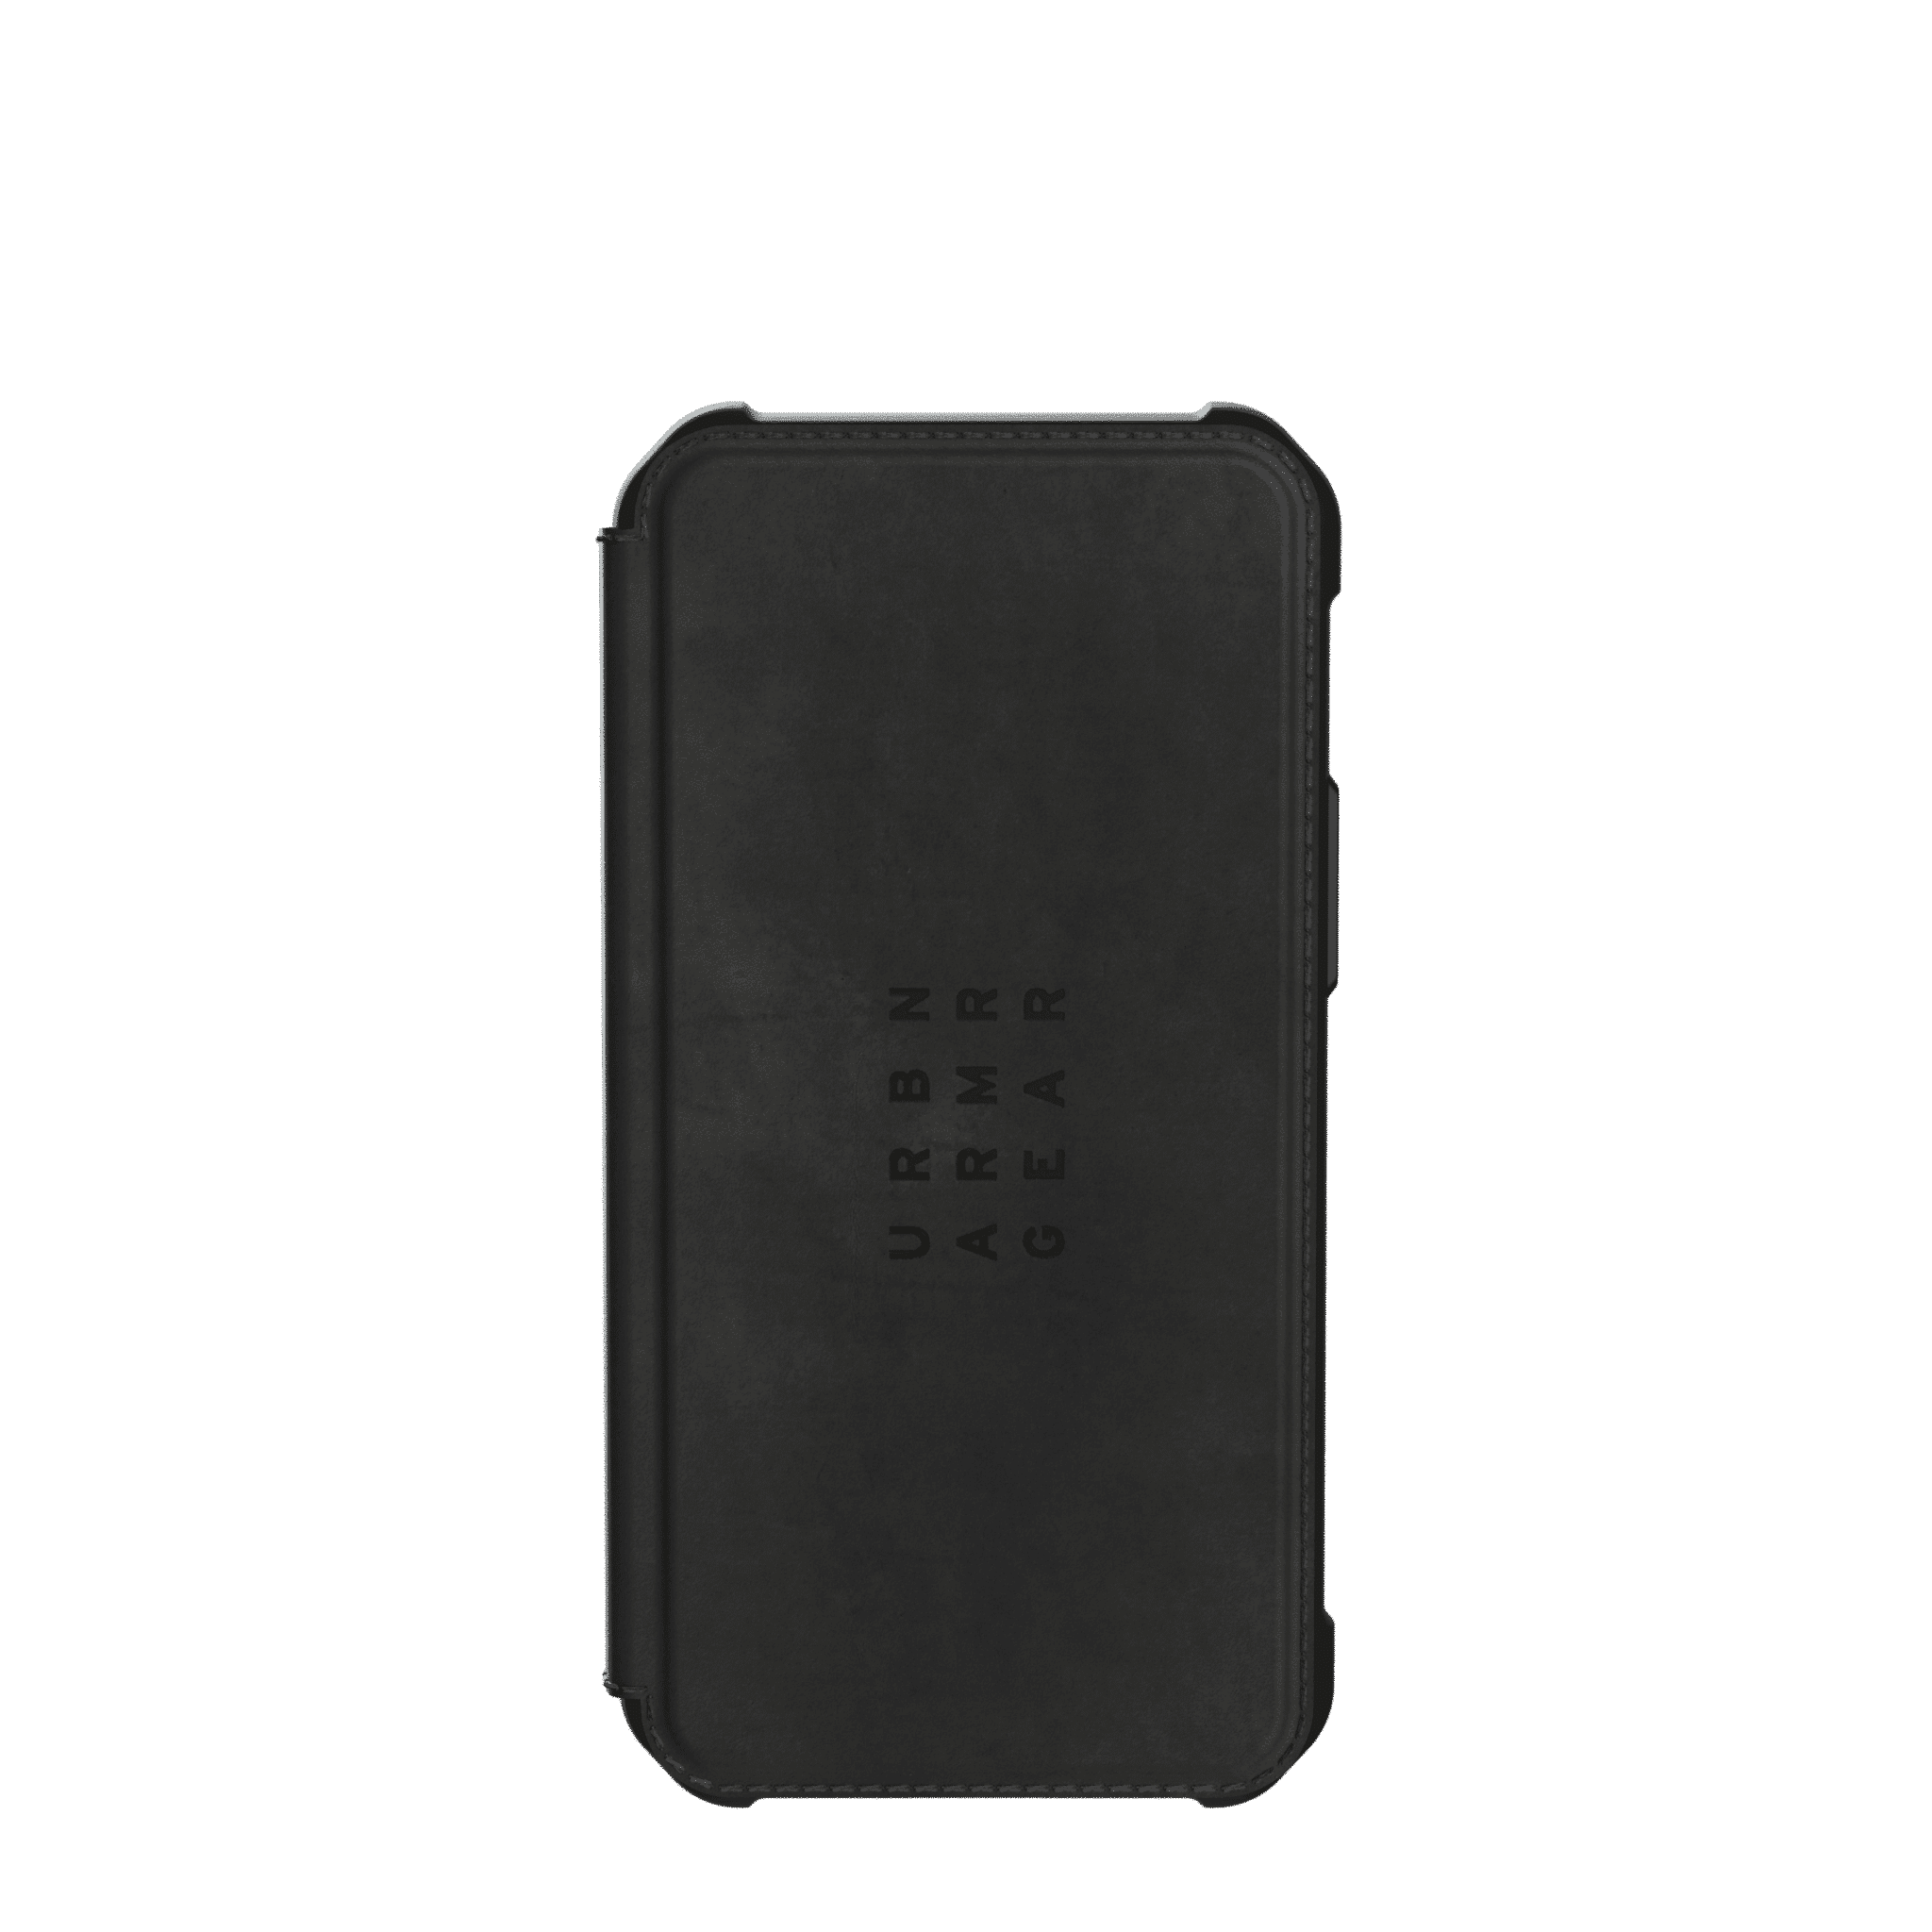 เคส UAG รุ่น Metropolis - iPhone 12 Mini - หนังแท้สีดำ